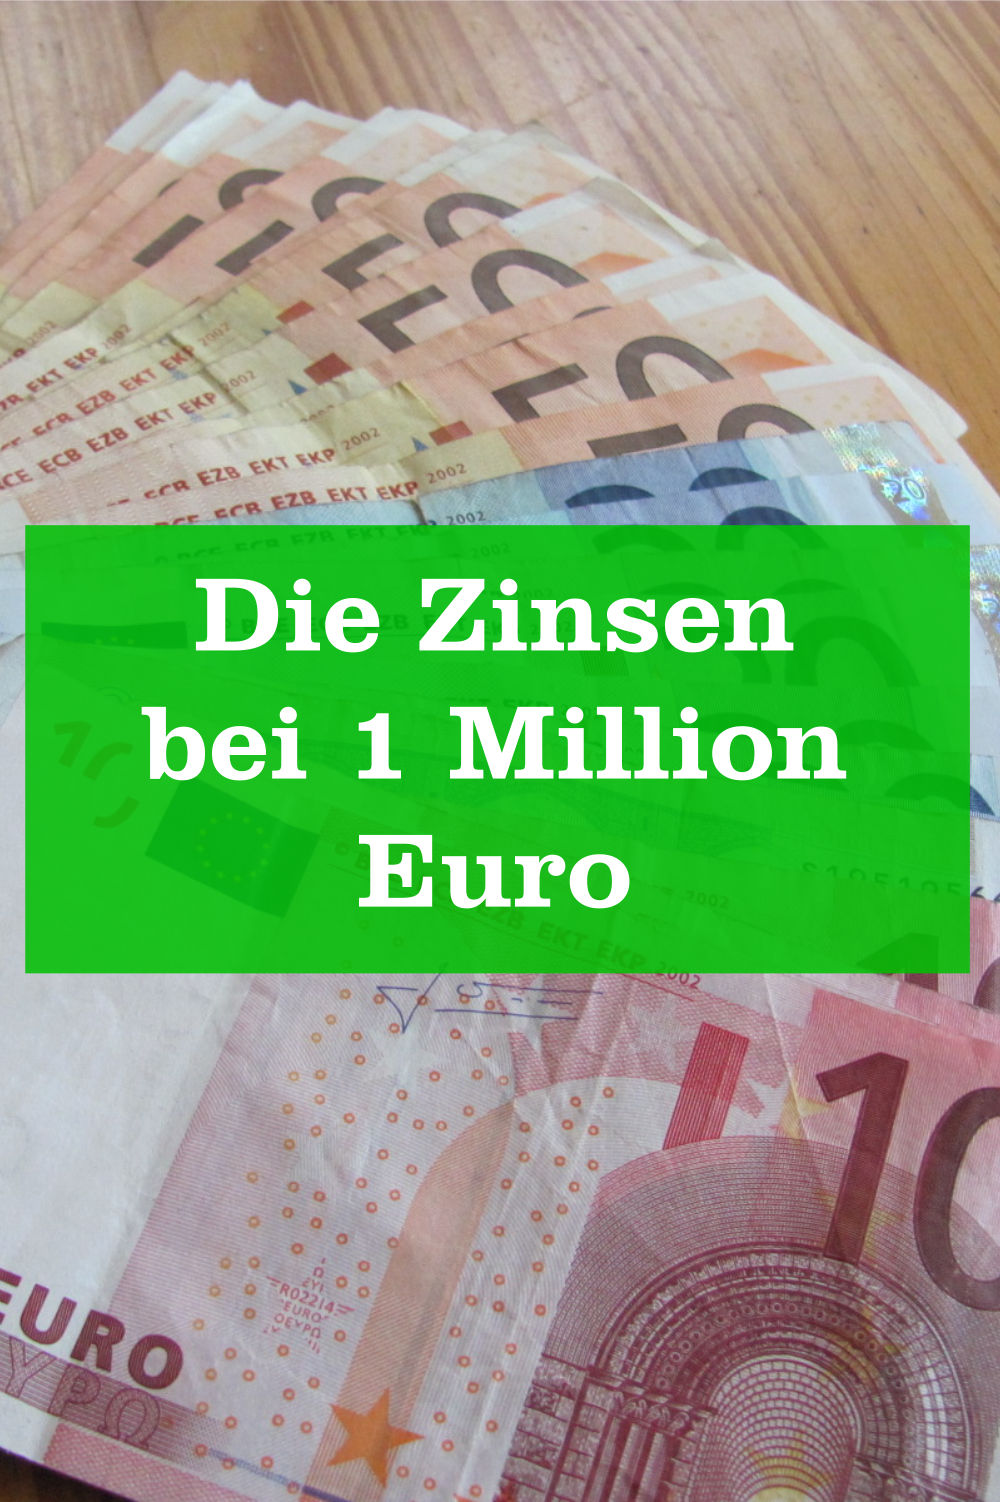 Zinsen 1 Million Euro